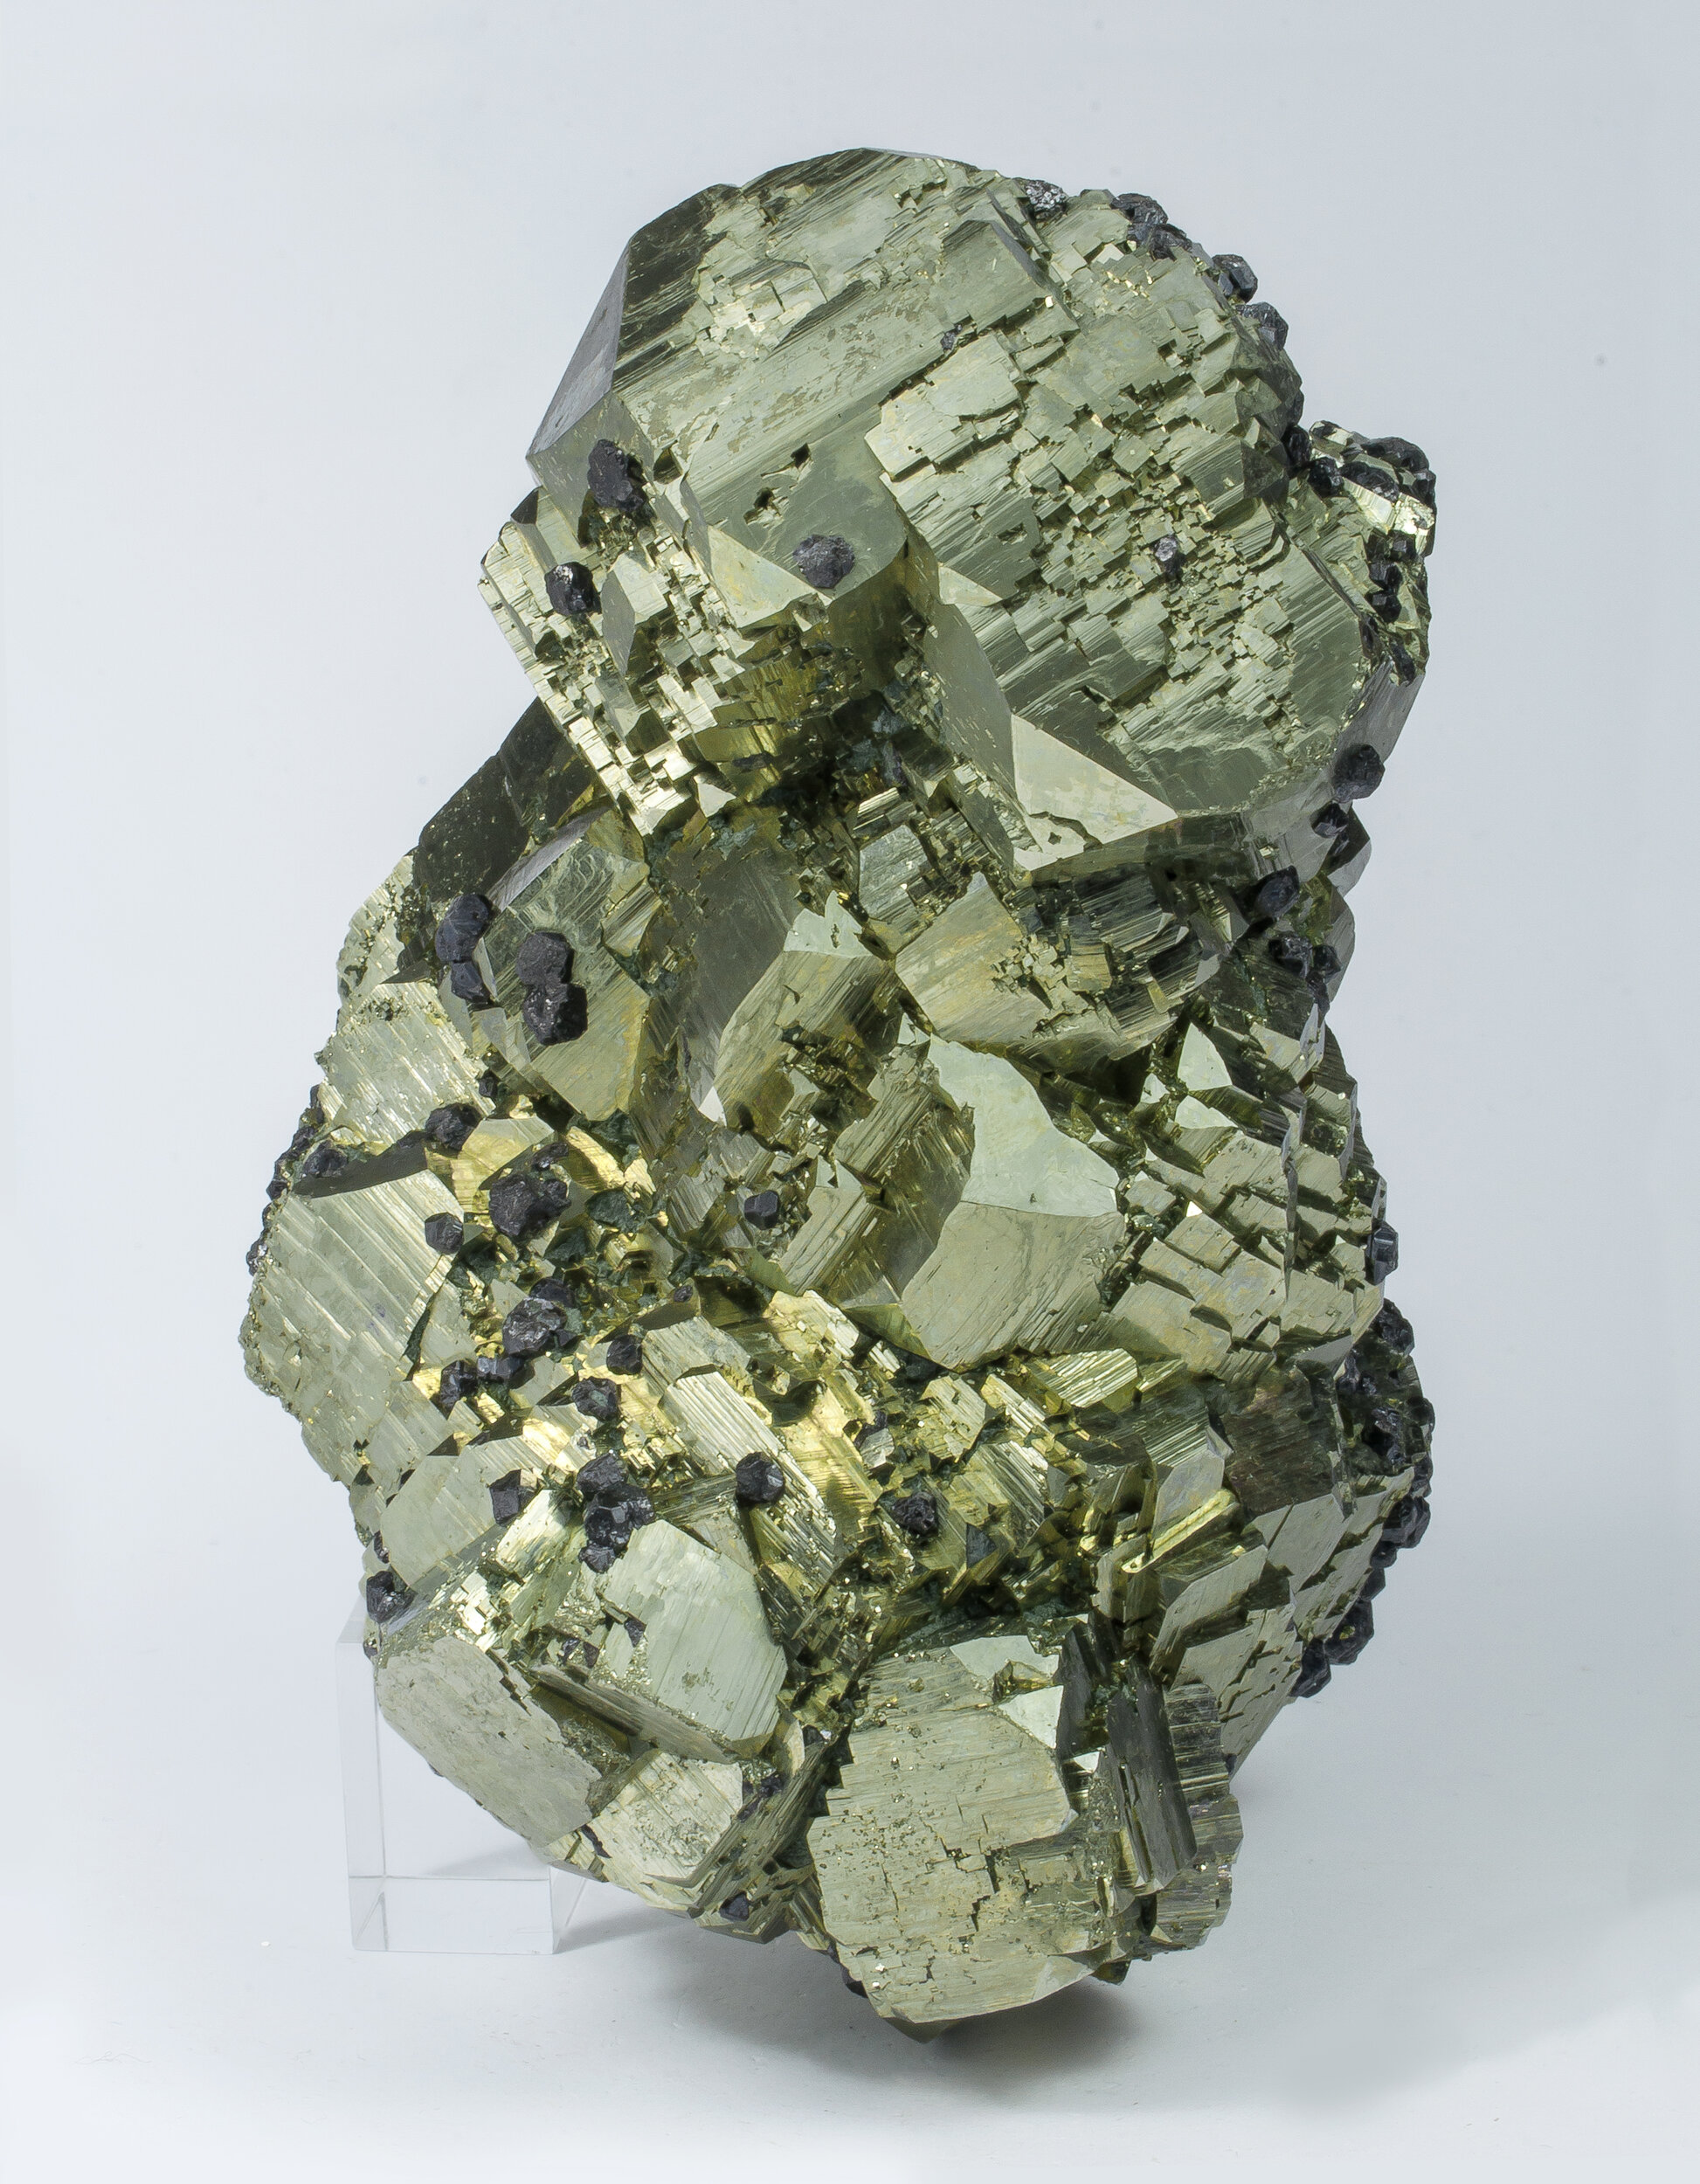 specimens/s_imagesAO1/Pyrite-EMF96AO1s.jpg